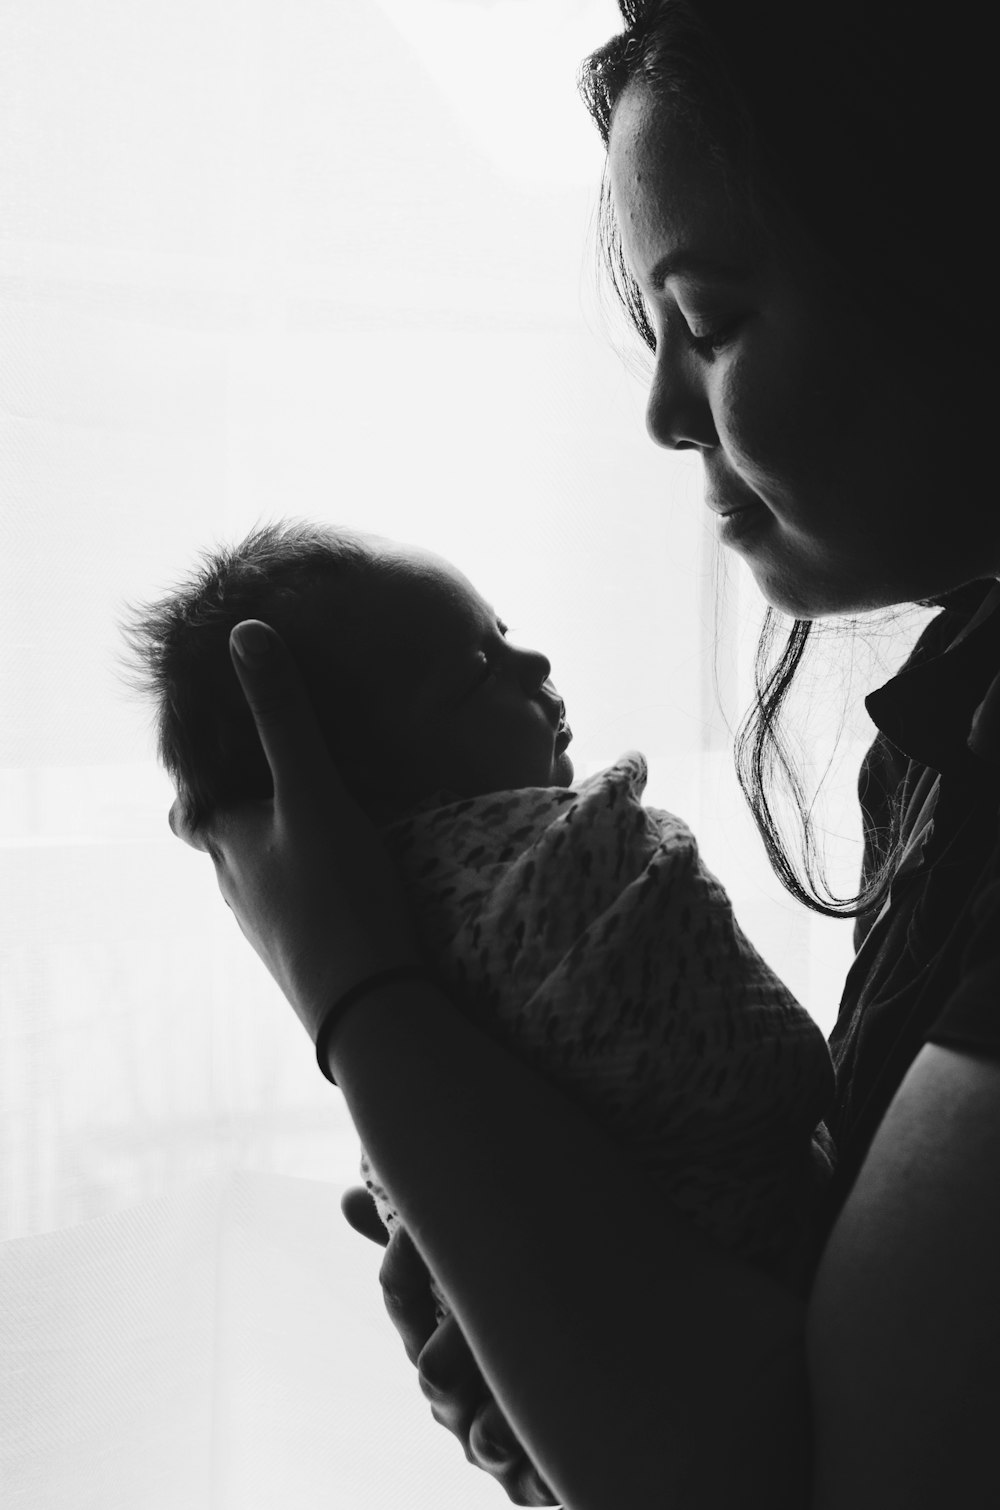 fotografia em tons de cinza da mulher que carrega um bebê